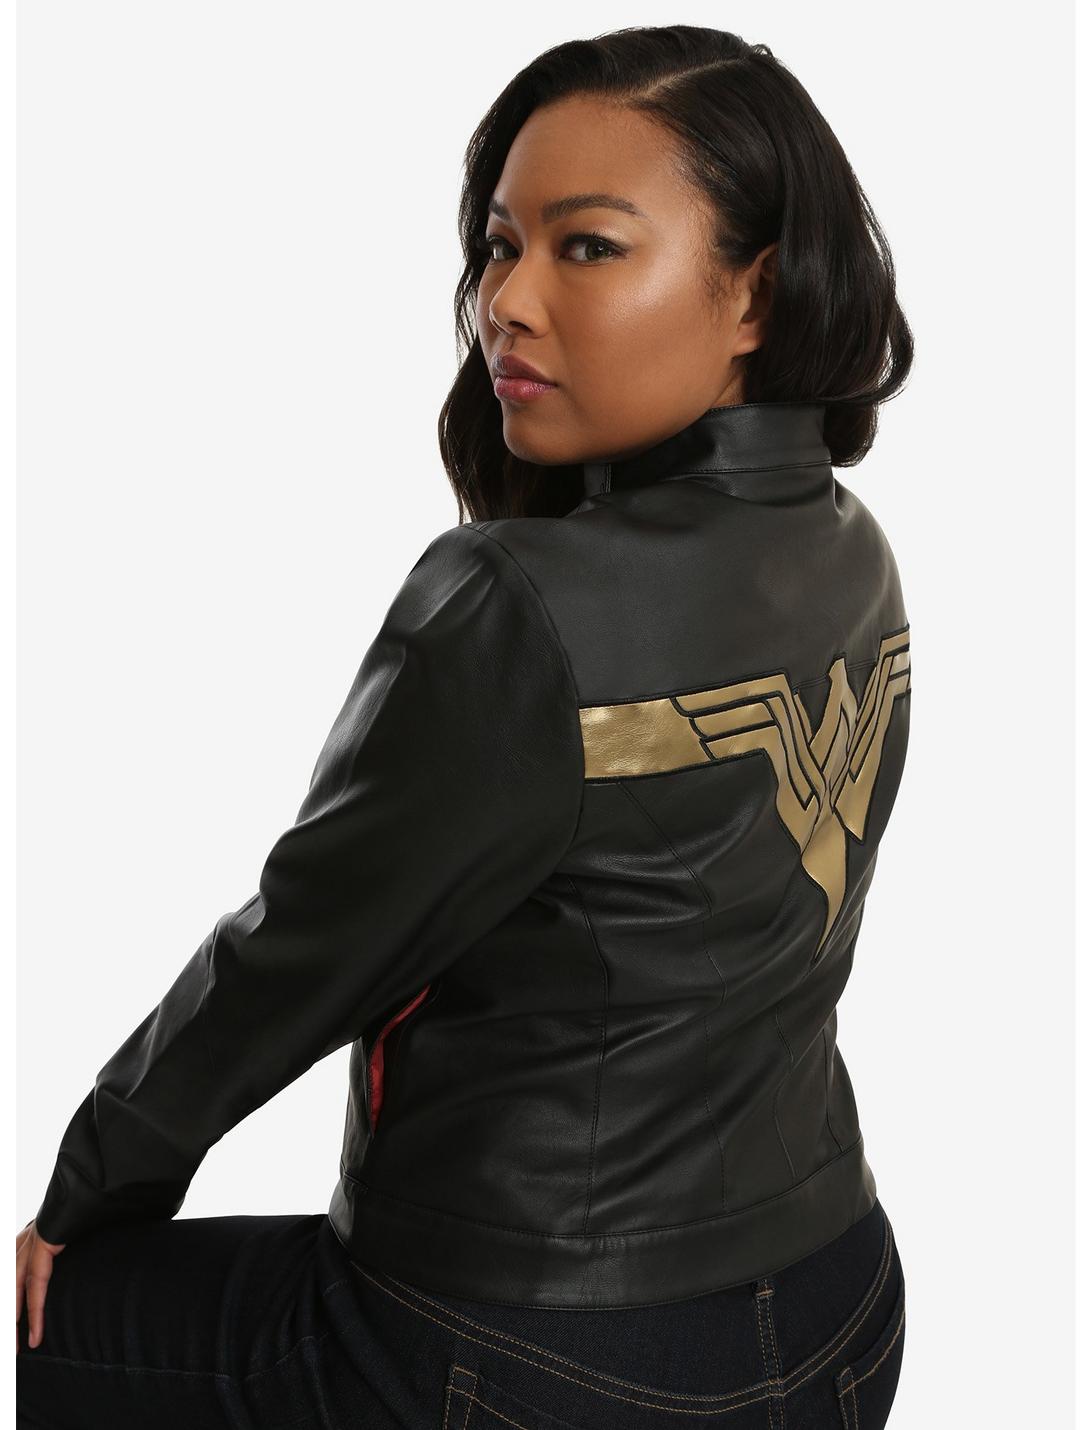 DC Comics Justice League Wonder Woman Faux Leather Jacket Plus Size, MULTI, hi-res